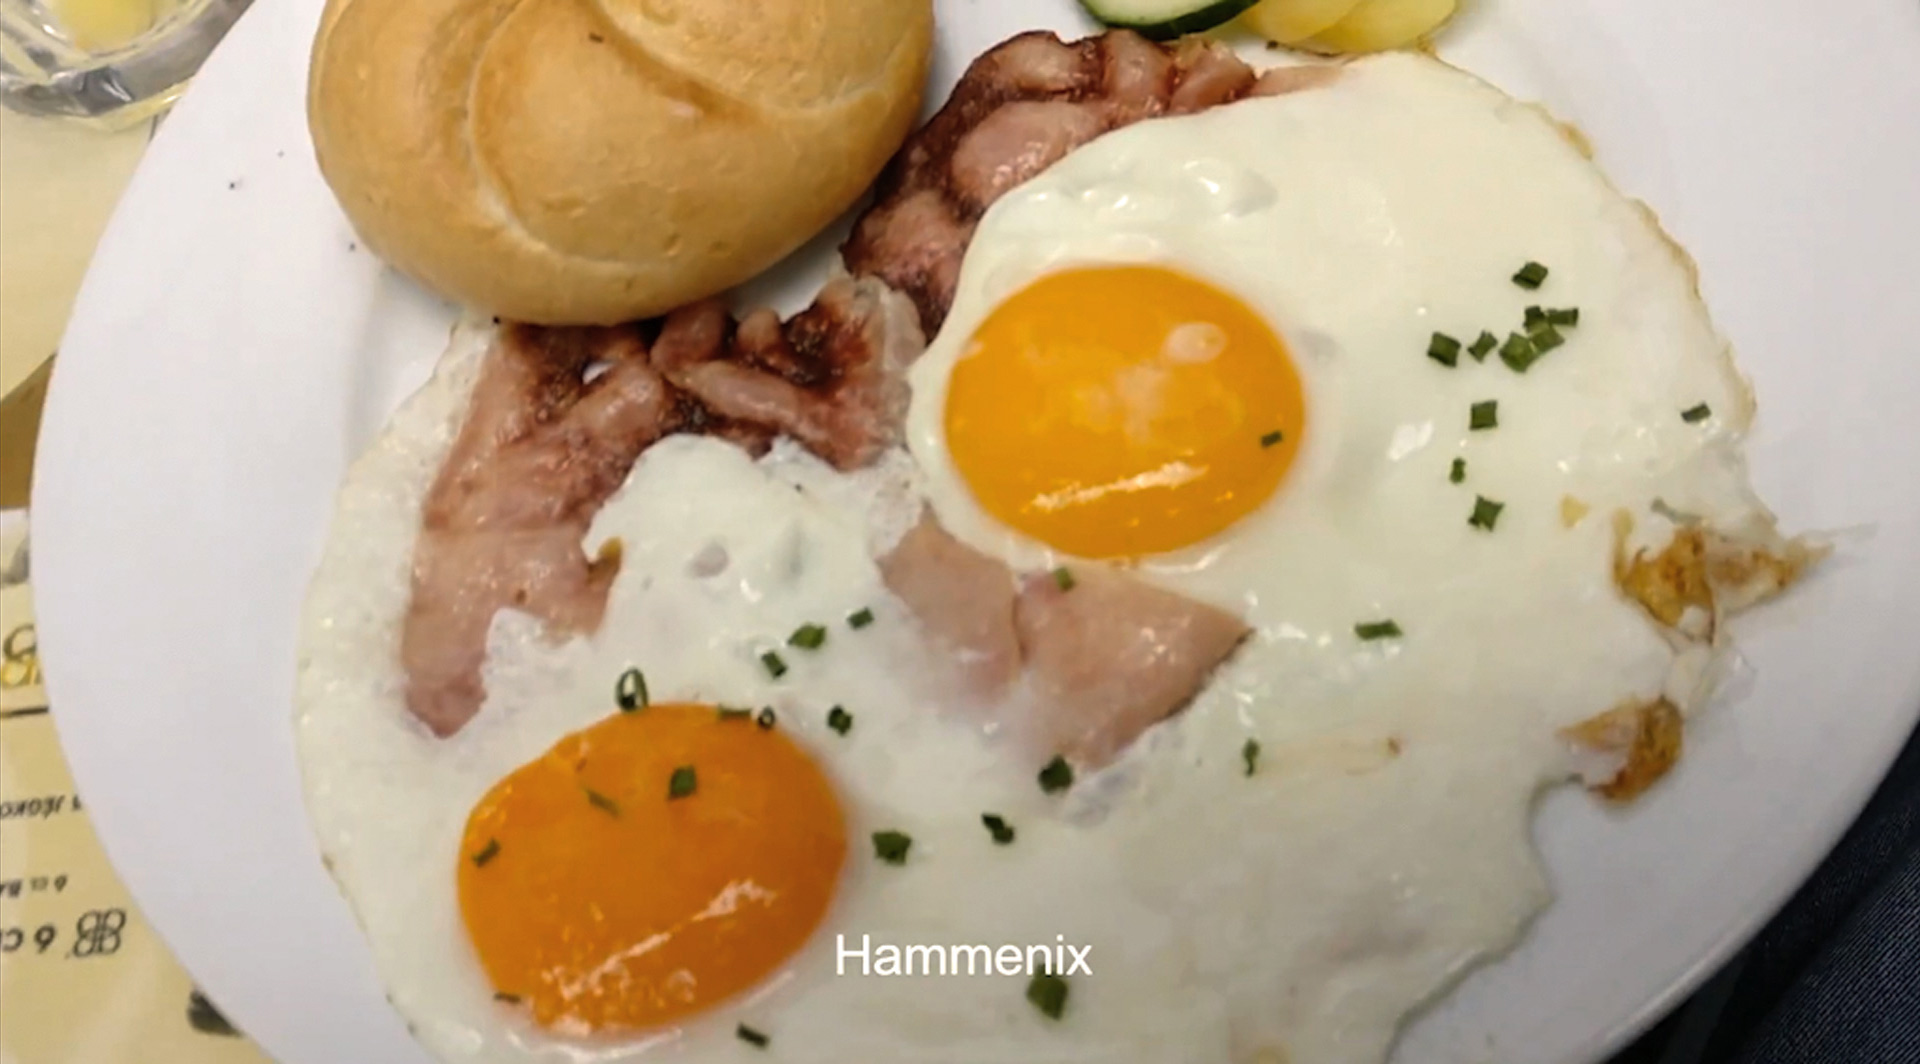 Hammenix as breakfast